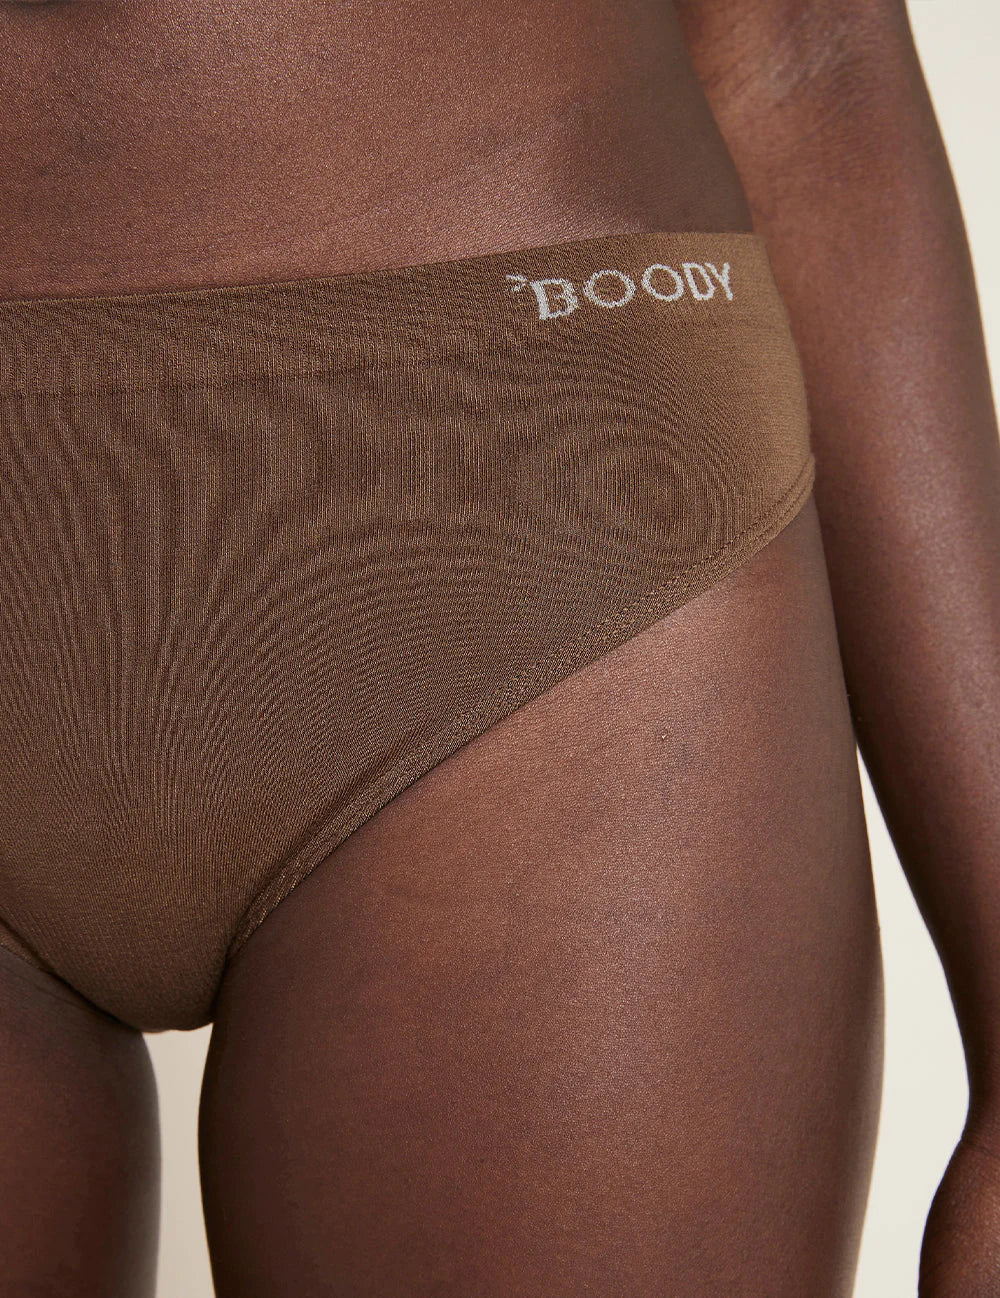 Boody - Classic Bikini (Nude 6)